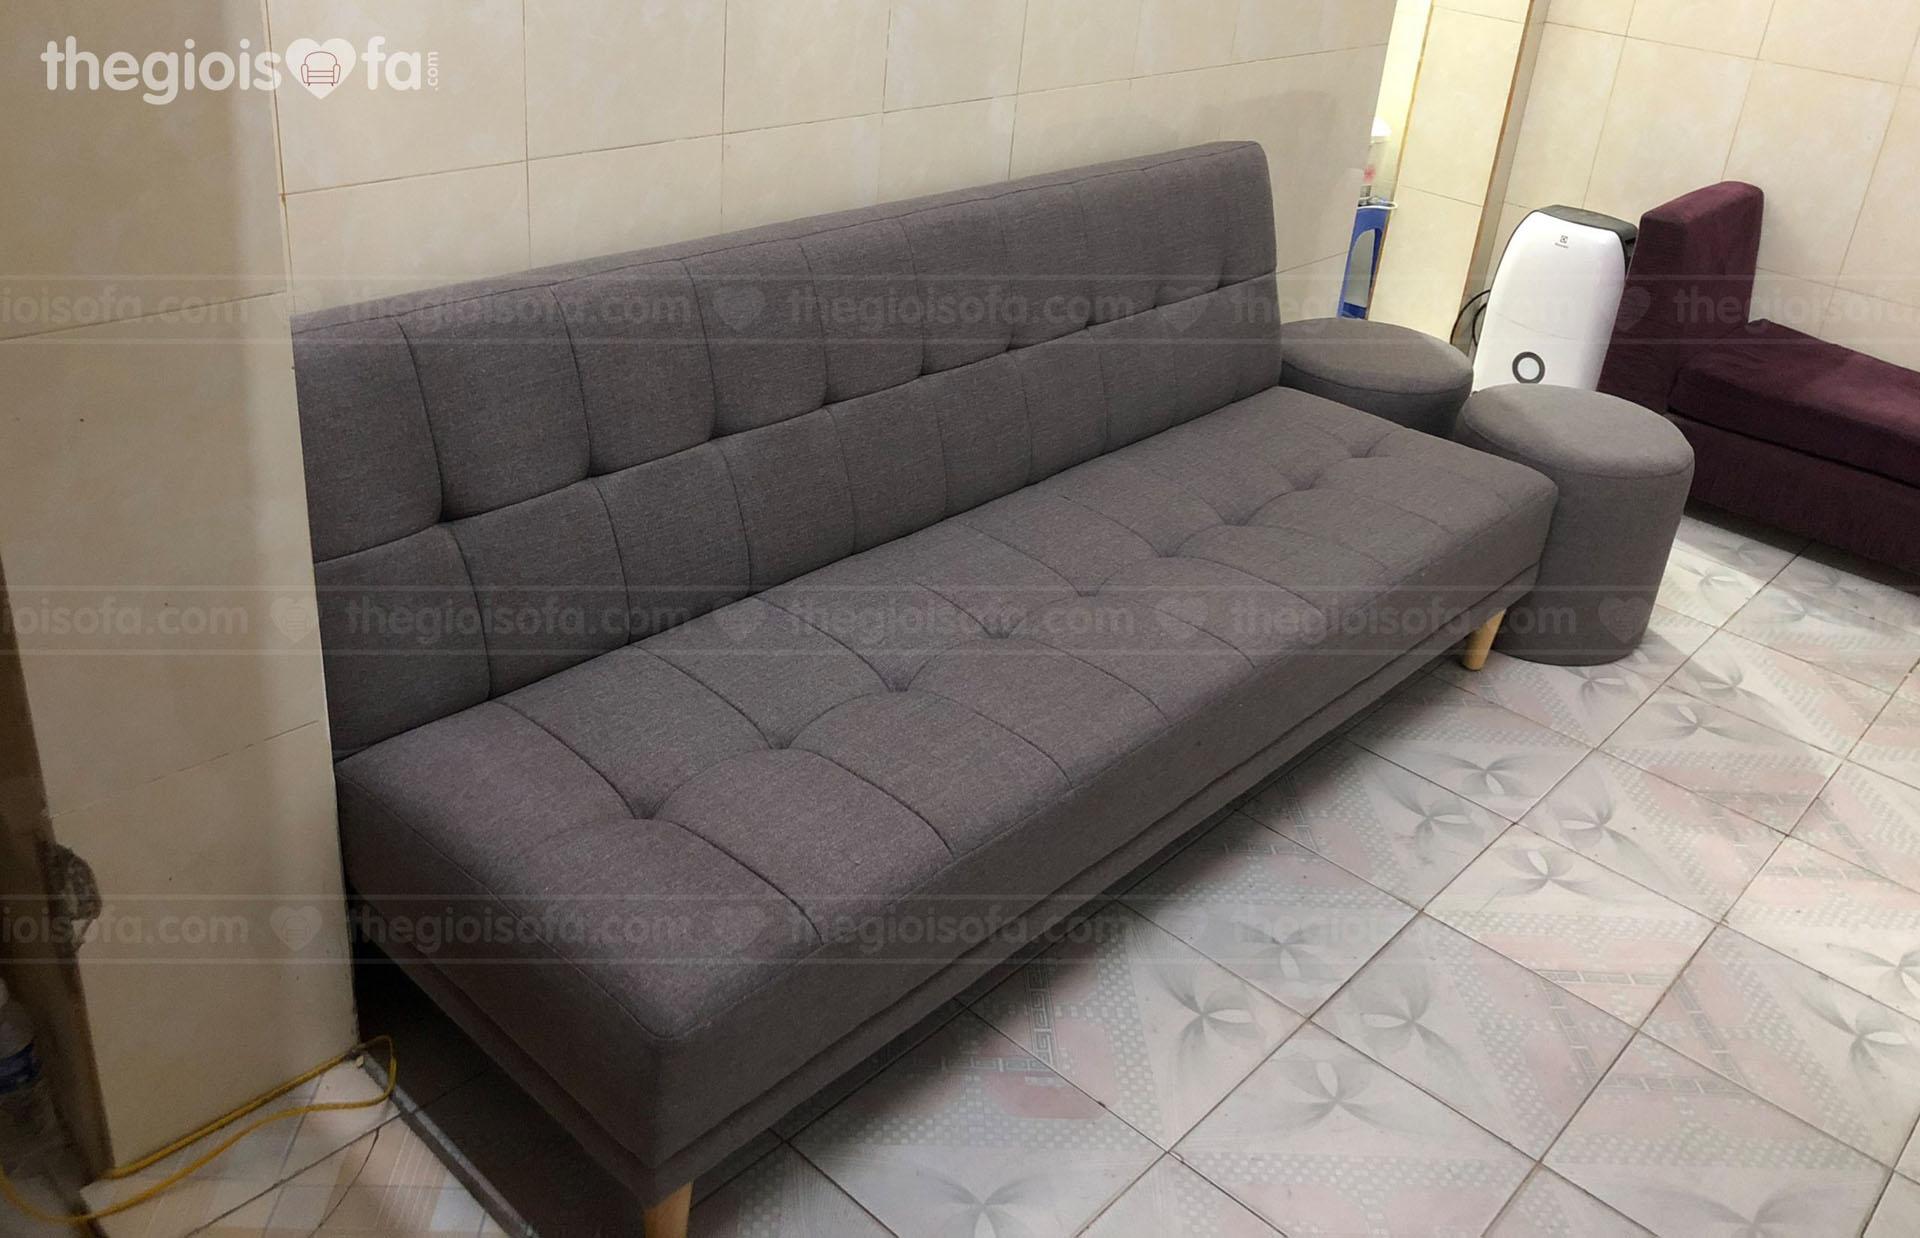 Giao hàng sofa giường Vera Grey cho chị Quyên ở 108 Nguyễn Lân – Phương Liệt – Thanh Xuân – Hà Nội